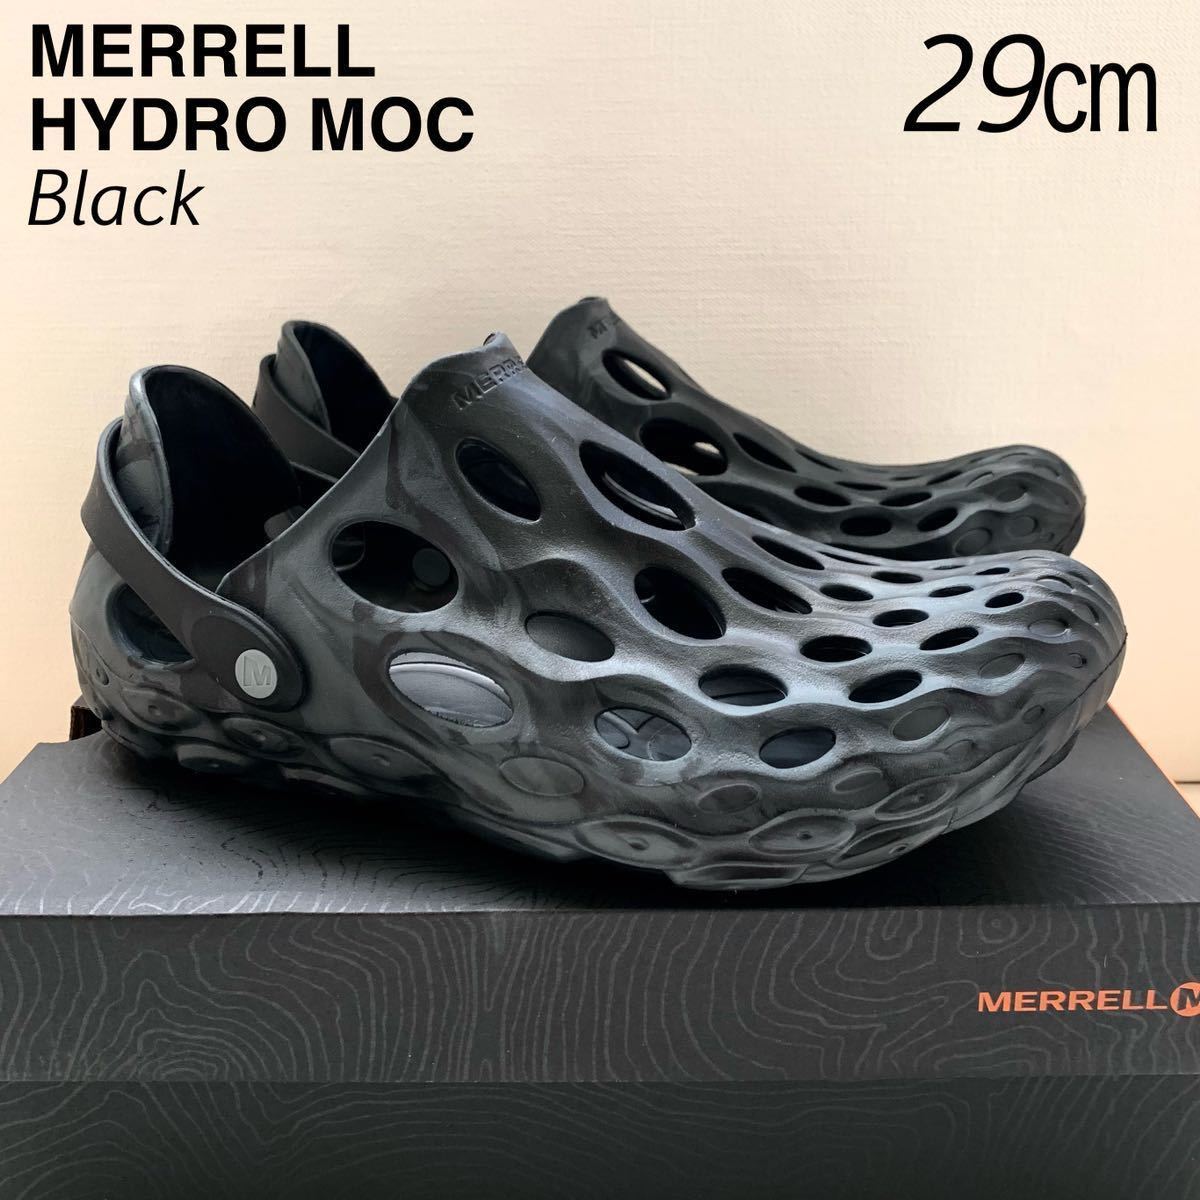 非常に高い品質 新品レア MERRELL Hydro Moc メレル ハイドロモック 水陸両用 シューズ サンダル メンズ 29㎝ 黒 US11 希少サイズ BLACK ブラック 28.0cm以上